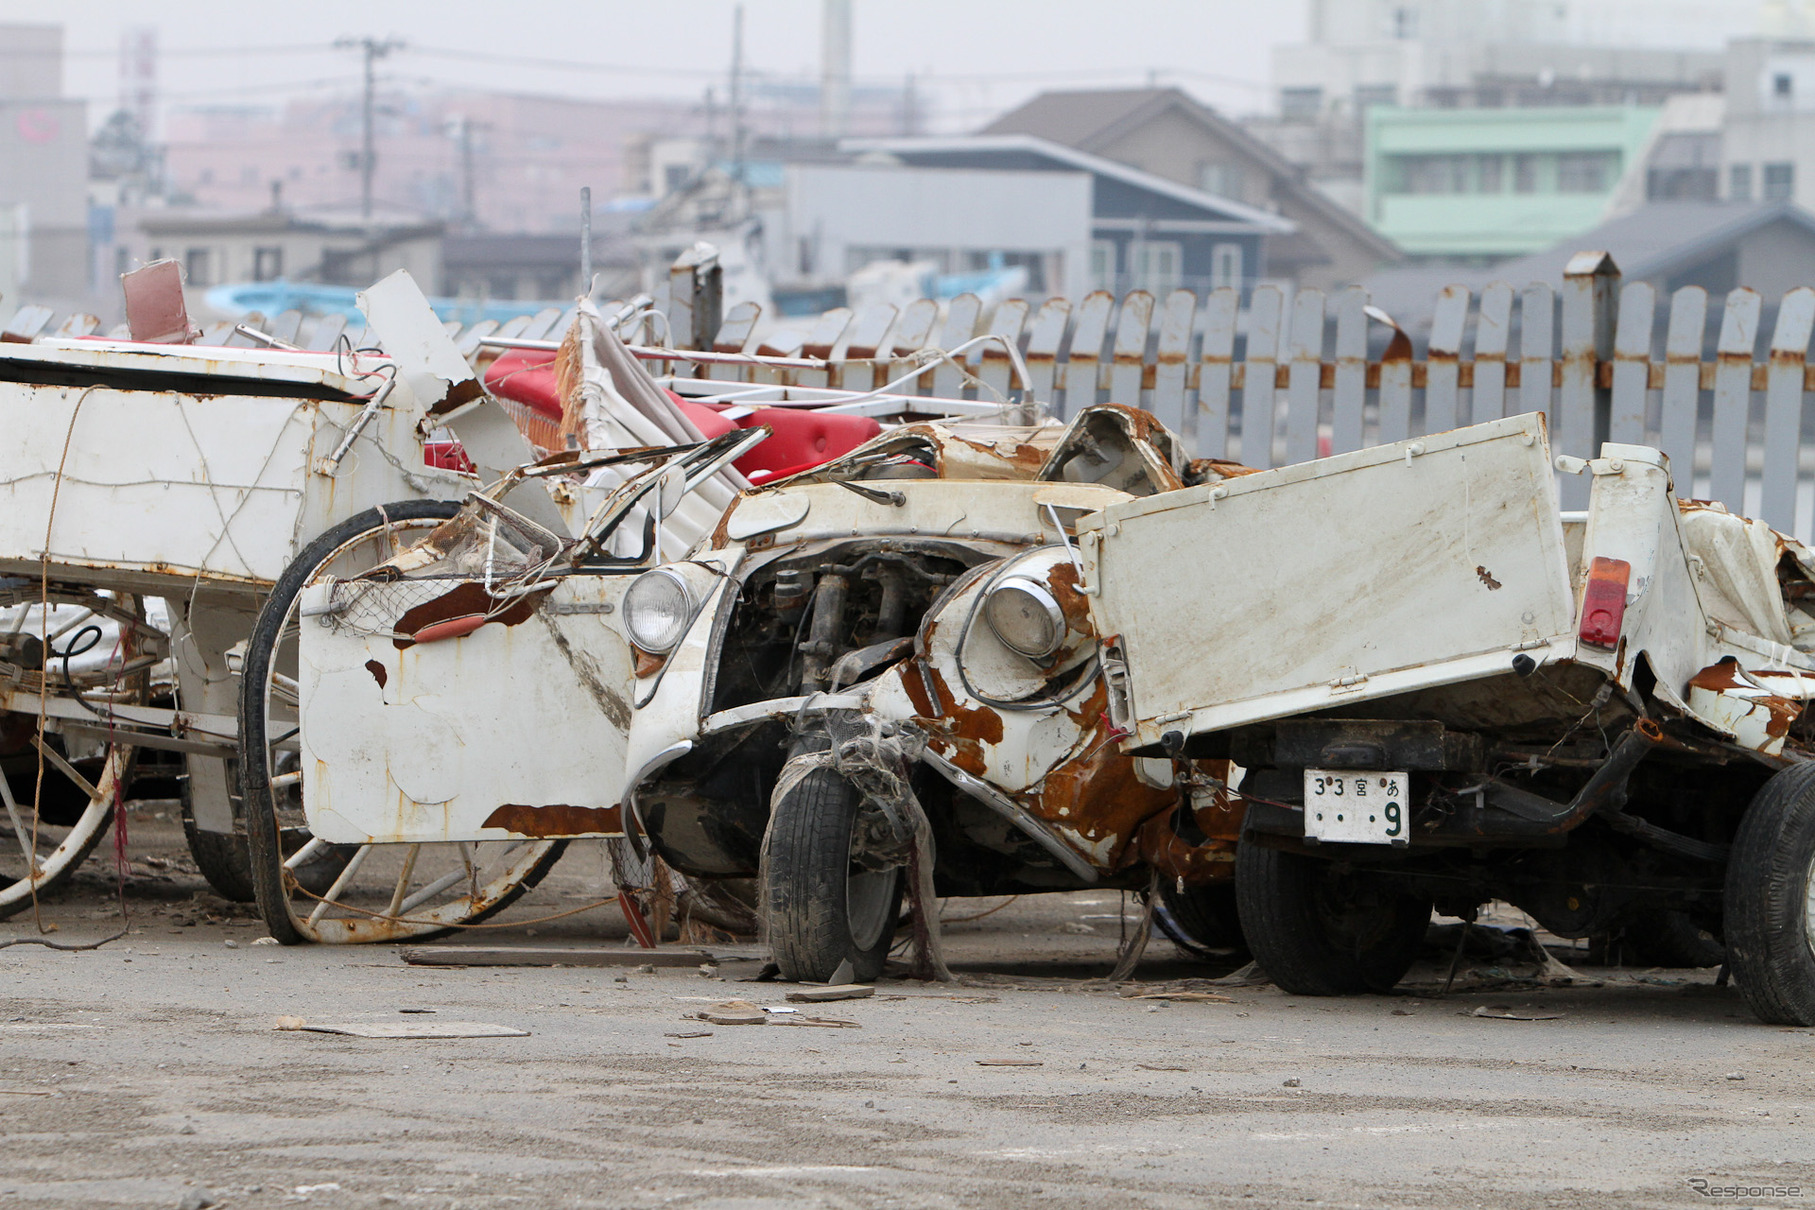 東日本大震災発生から3か月。宮城県石巻市